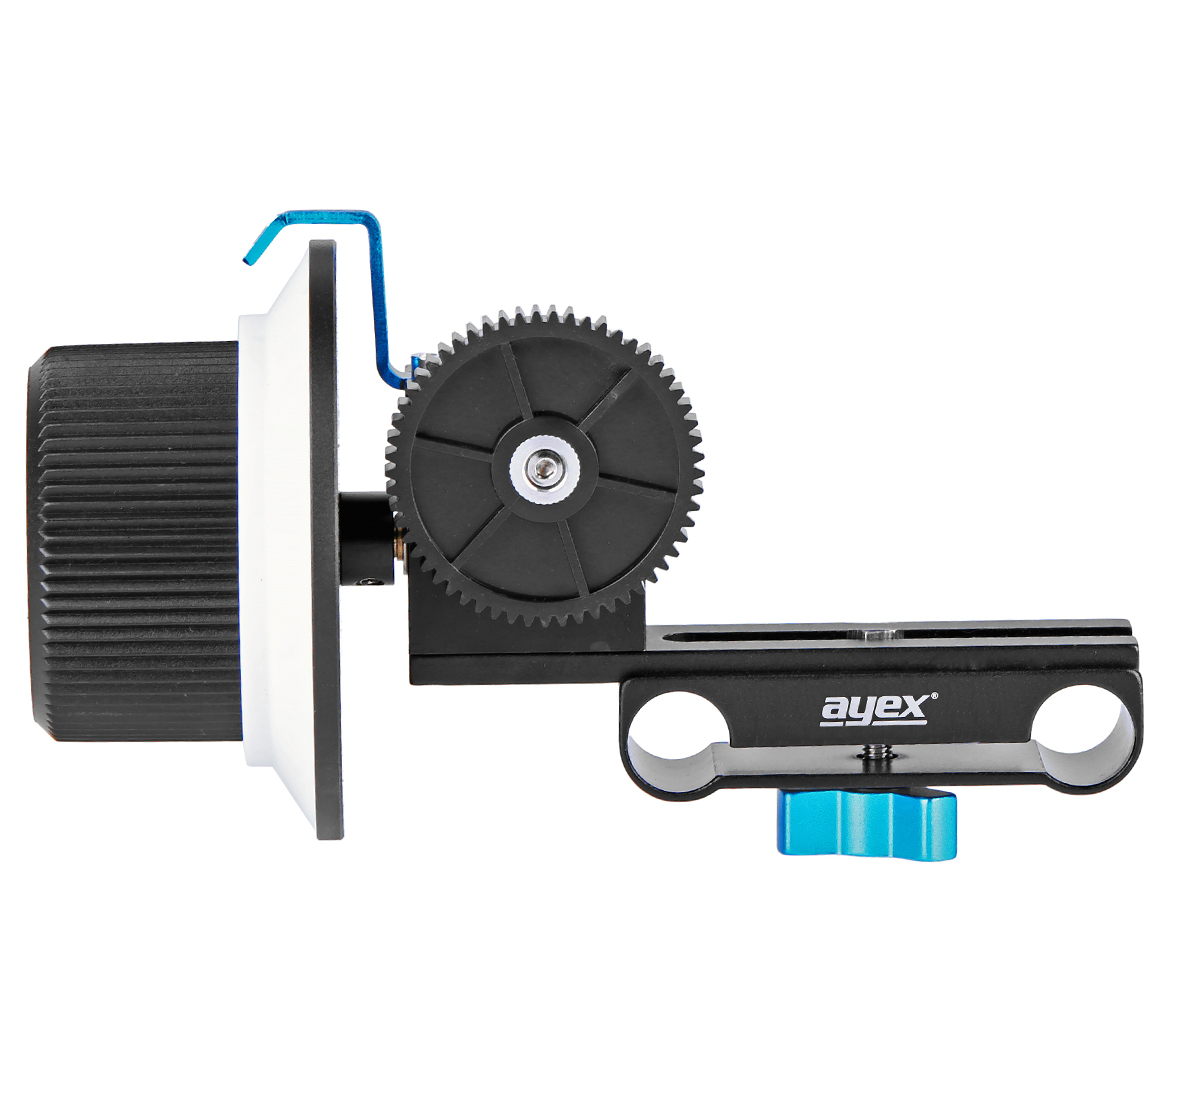 ayex Follow Focus F1, Schärfezieheinrichtung für DSLRs, Systemkameras und Rig Systeme